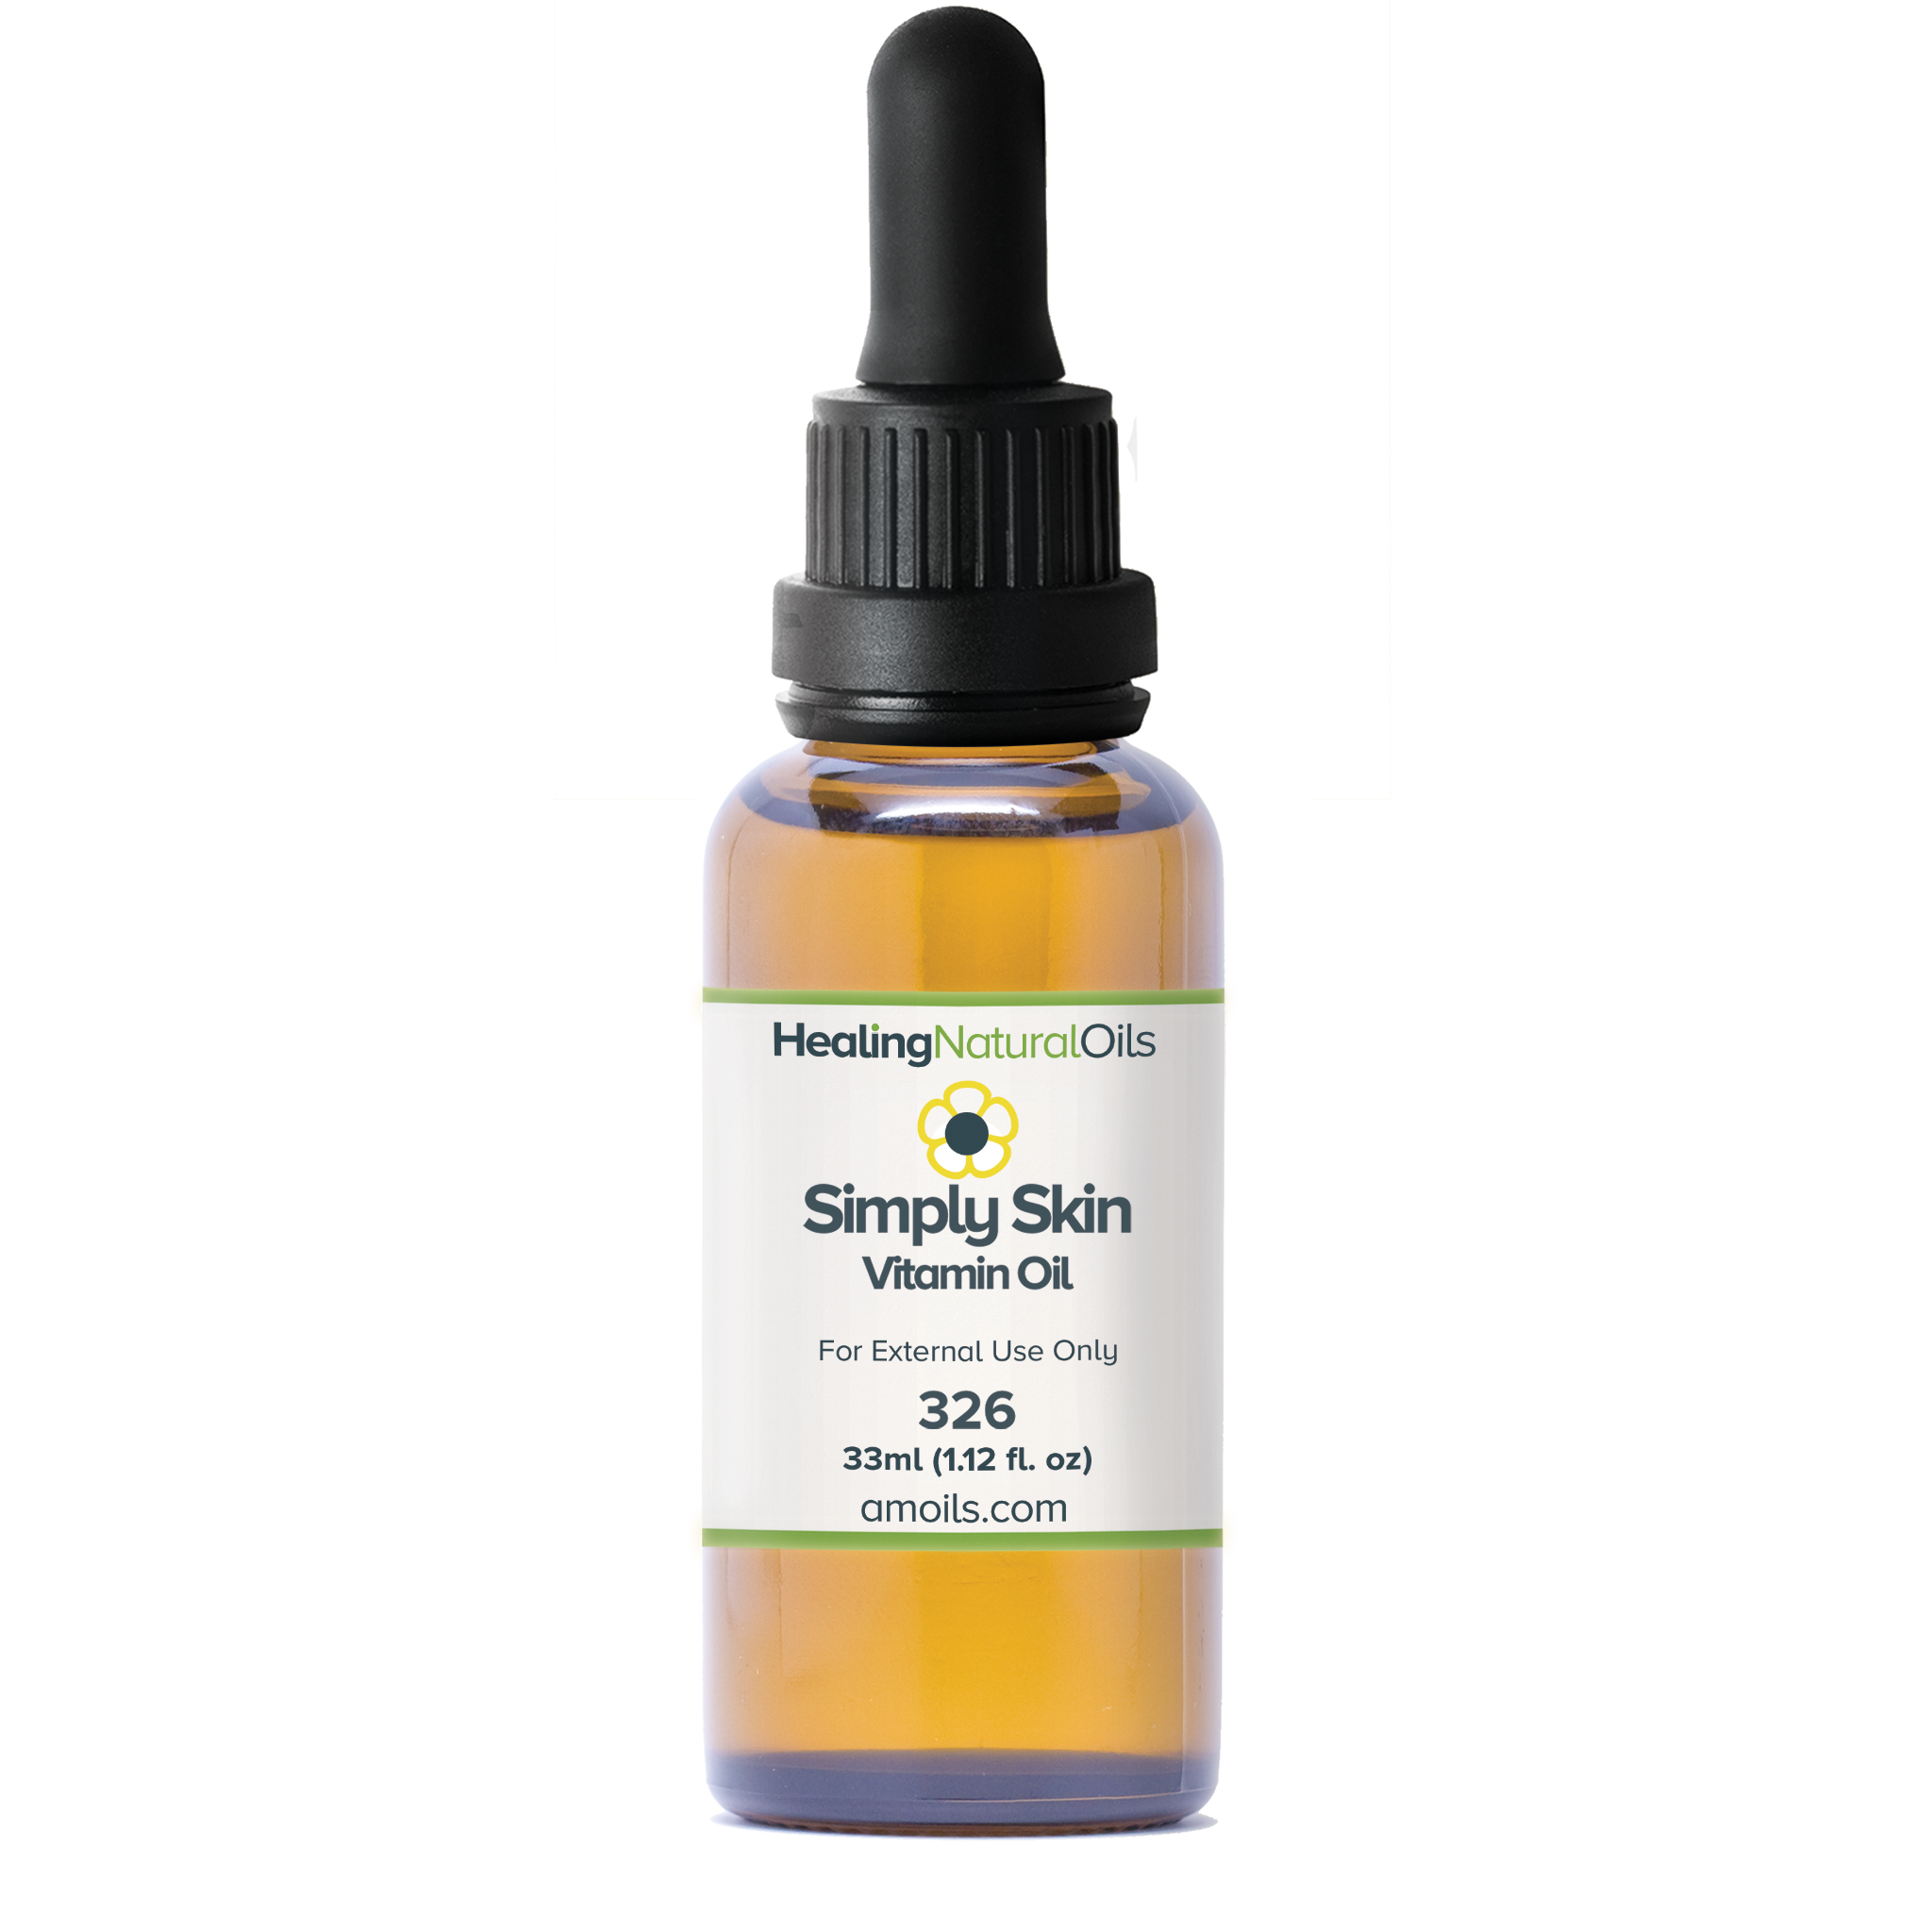 Simply Skin Vitamin Oil